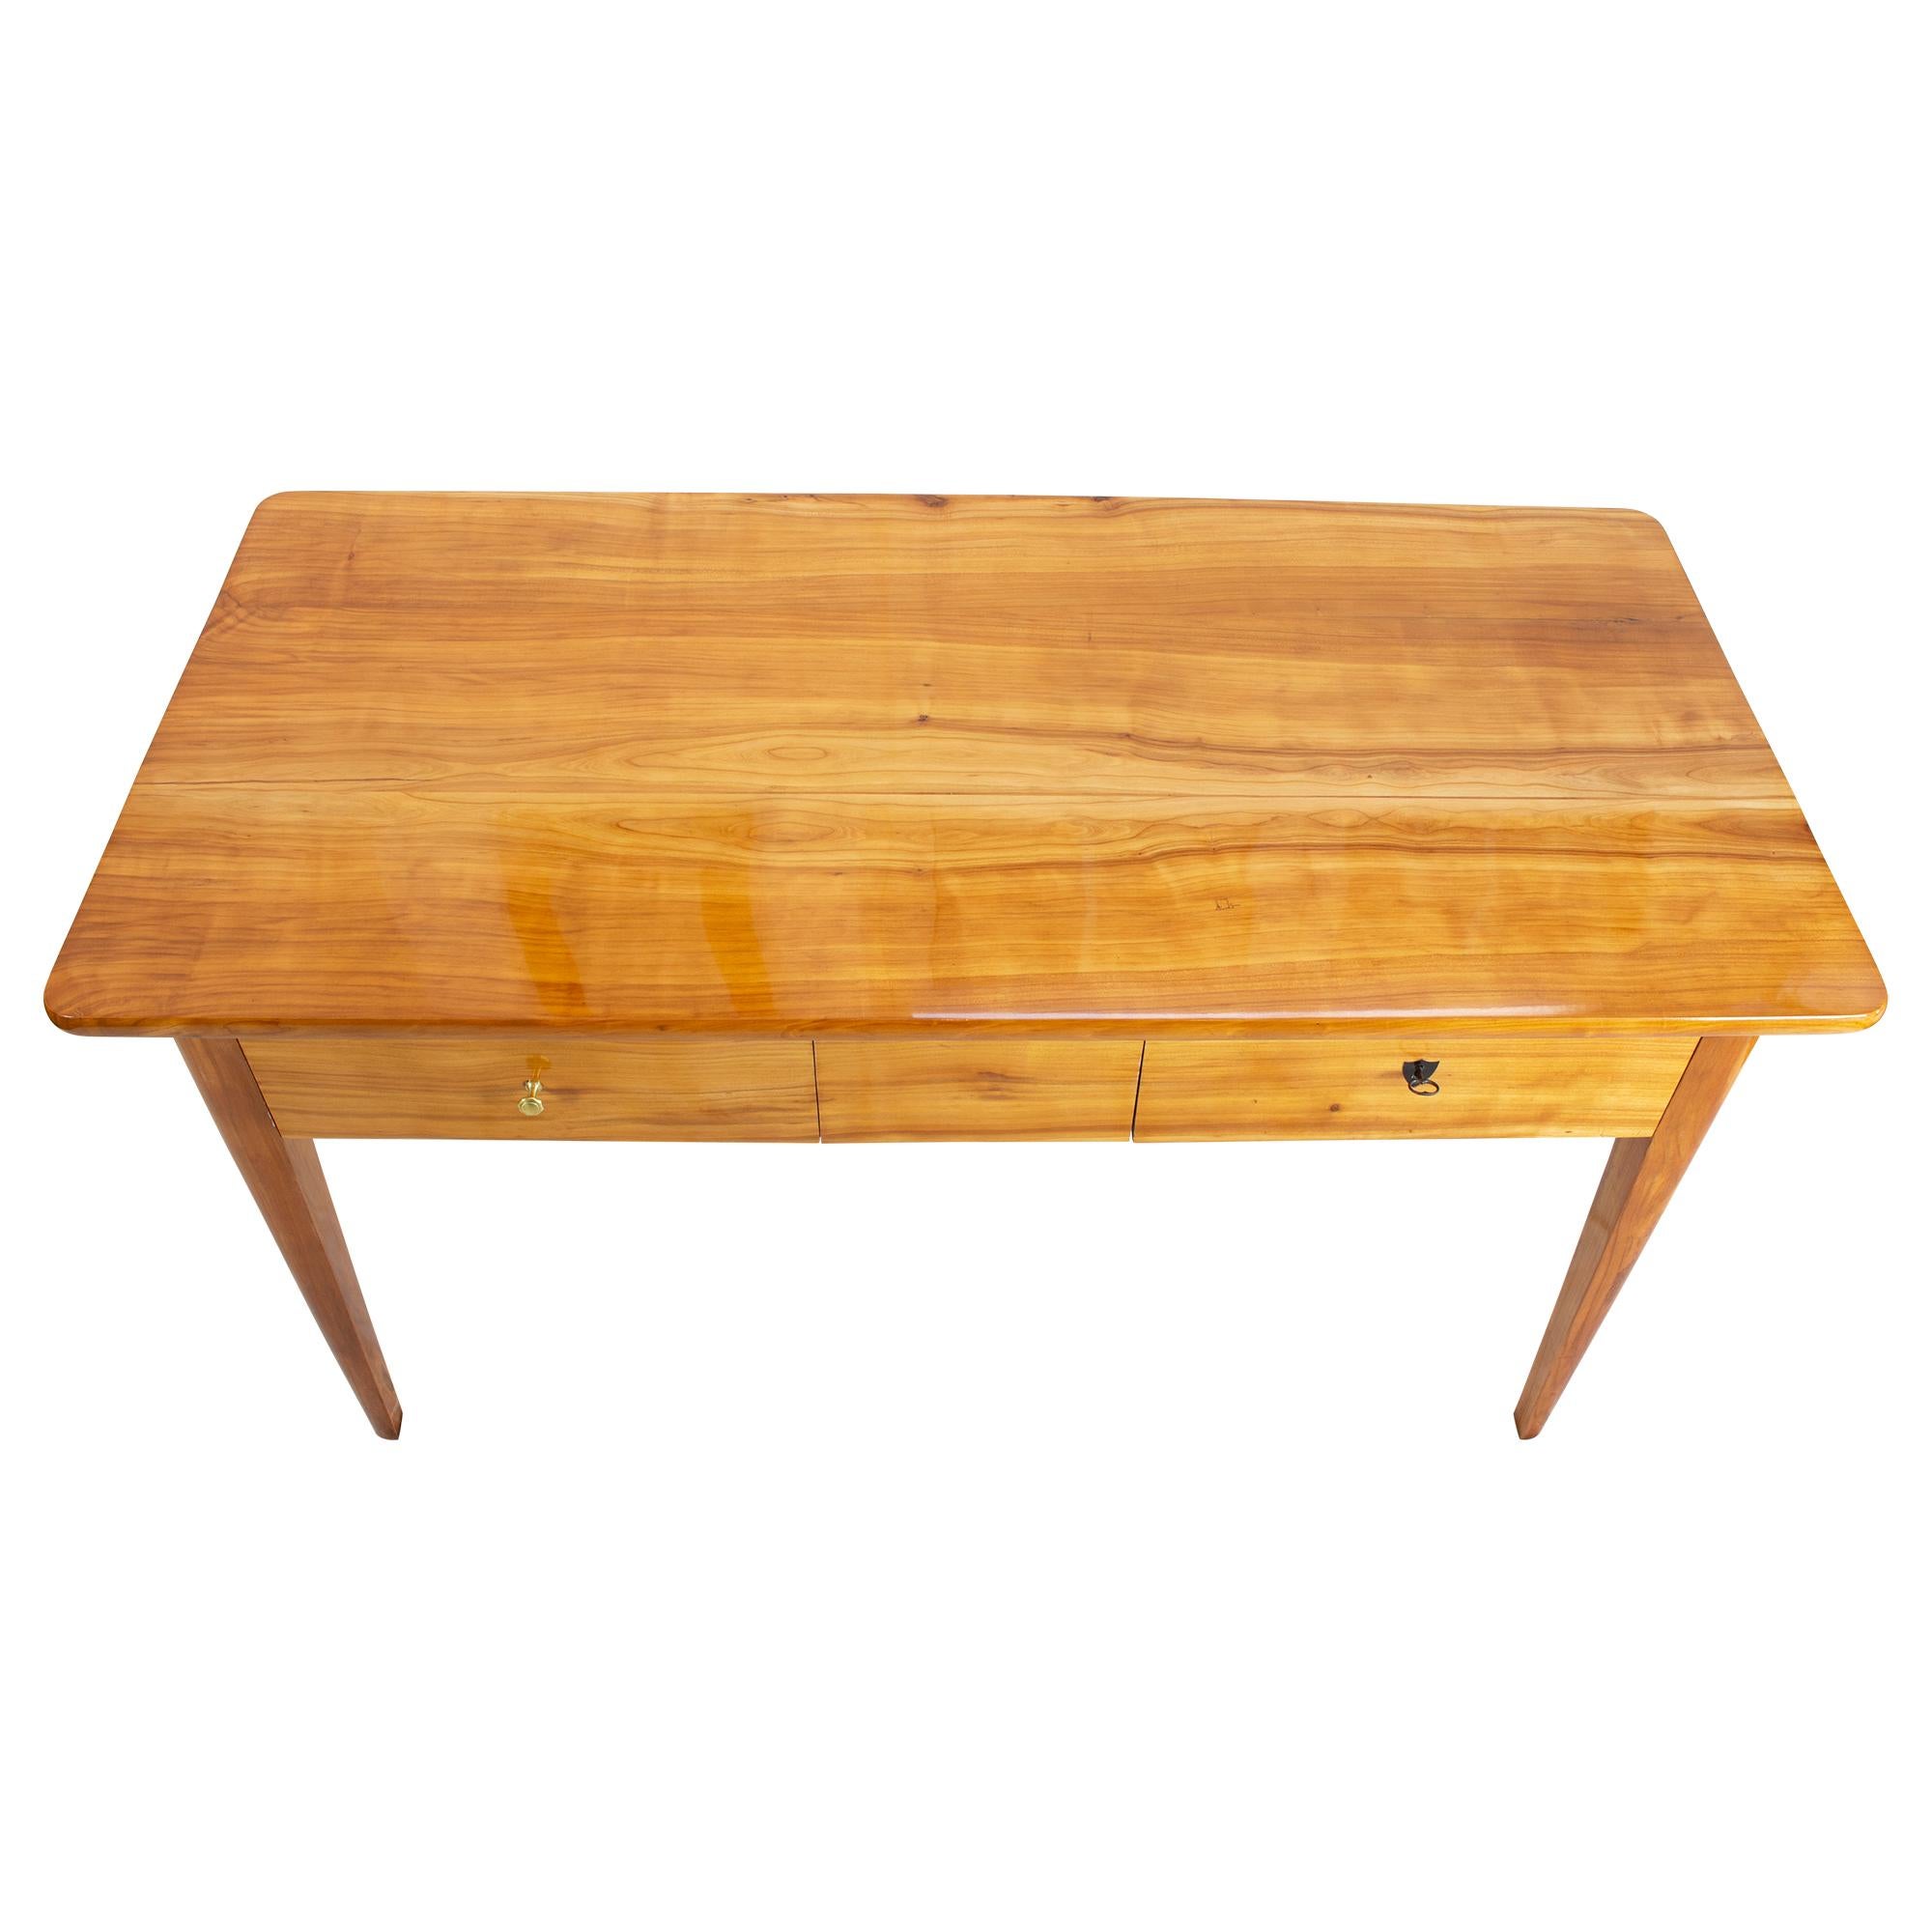 Ein sehr schöner Tisch aus massivem Kirschbaumholz, aus der Biedermeierzeit um 1830, mit zwei Schubladen (Kirsche / Weichholz.). Der Abstand zwischen dem Boden und dem Rahmen beträgt 57,5 cm. 
Der Tisch ist in einem sehr guten restaurierten Zustand.